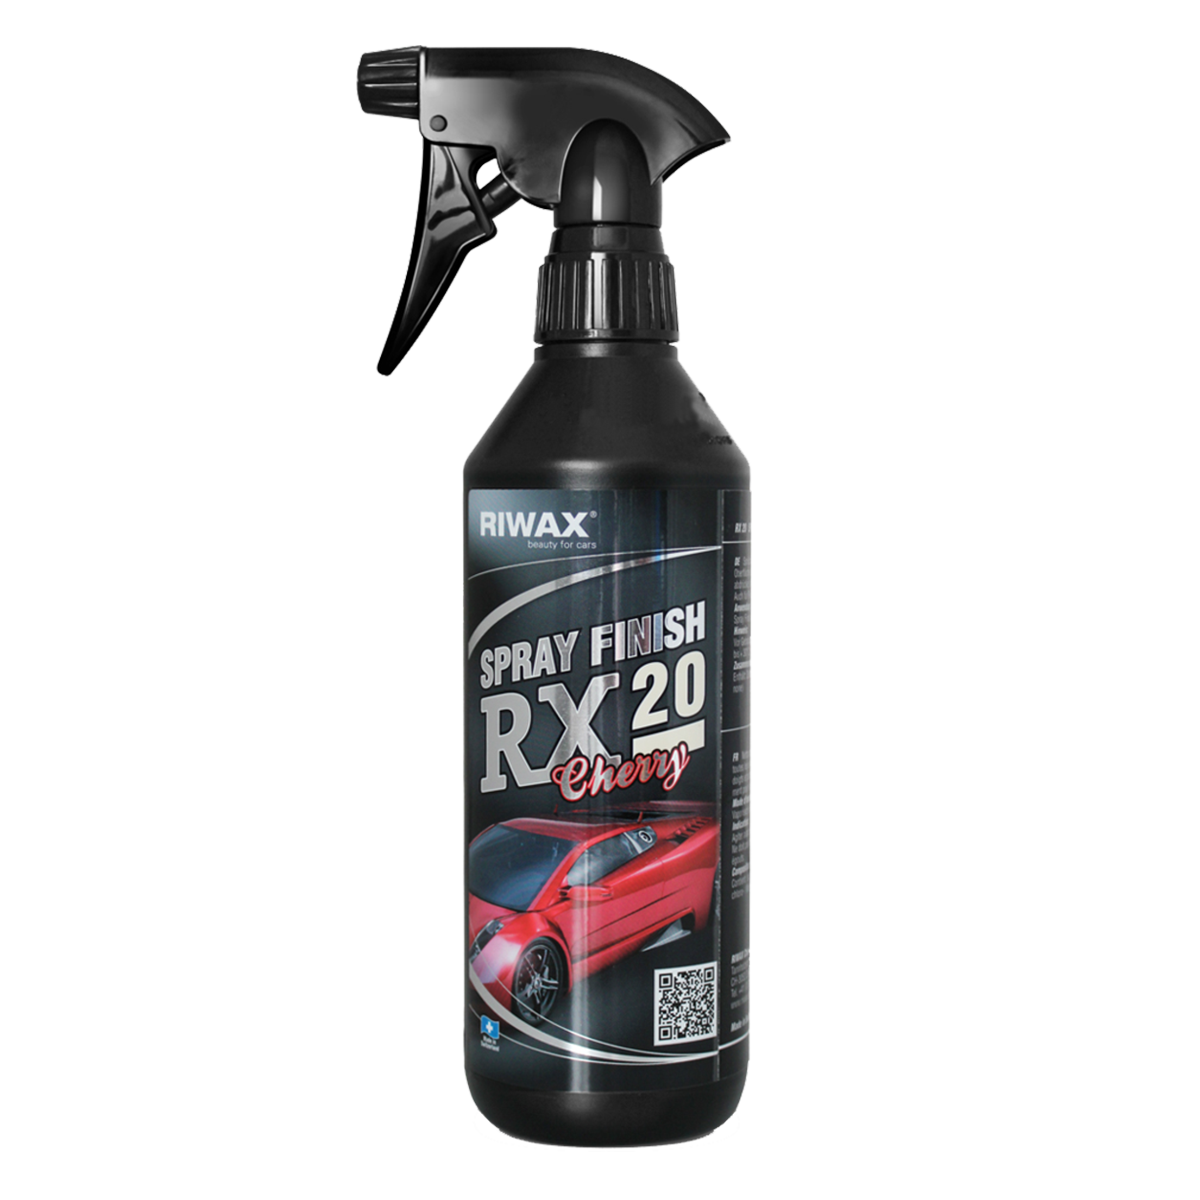 Купить ручную полироль для кузова автомобиля. RIWAX rx20. Спрей полироль кузова RX. RIWAX очиститель для кузова. Асмако Wax Spray полироль.